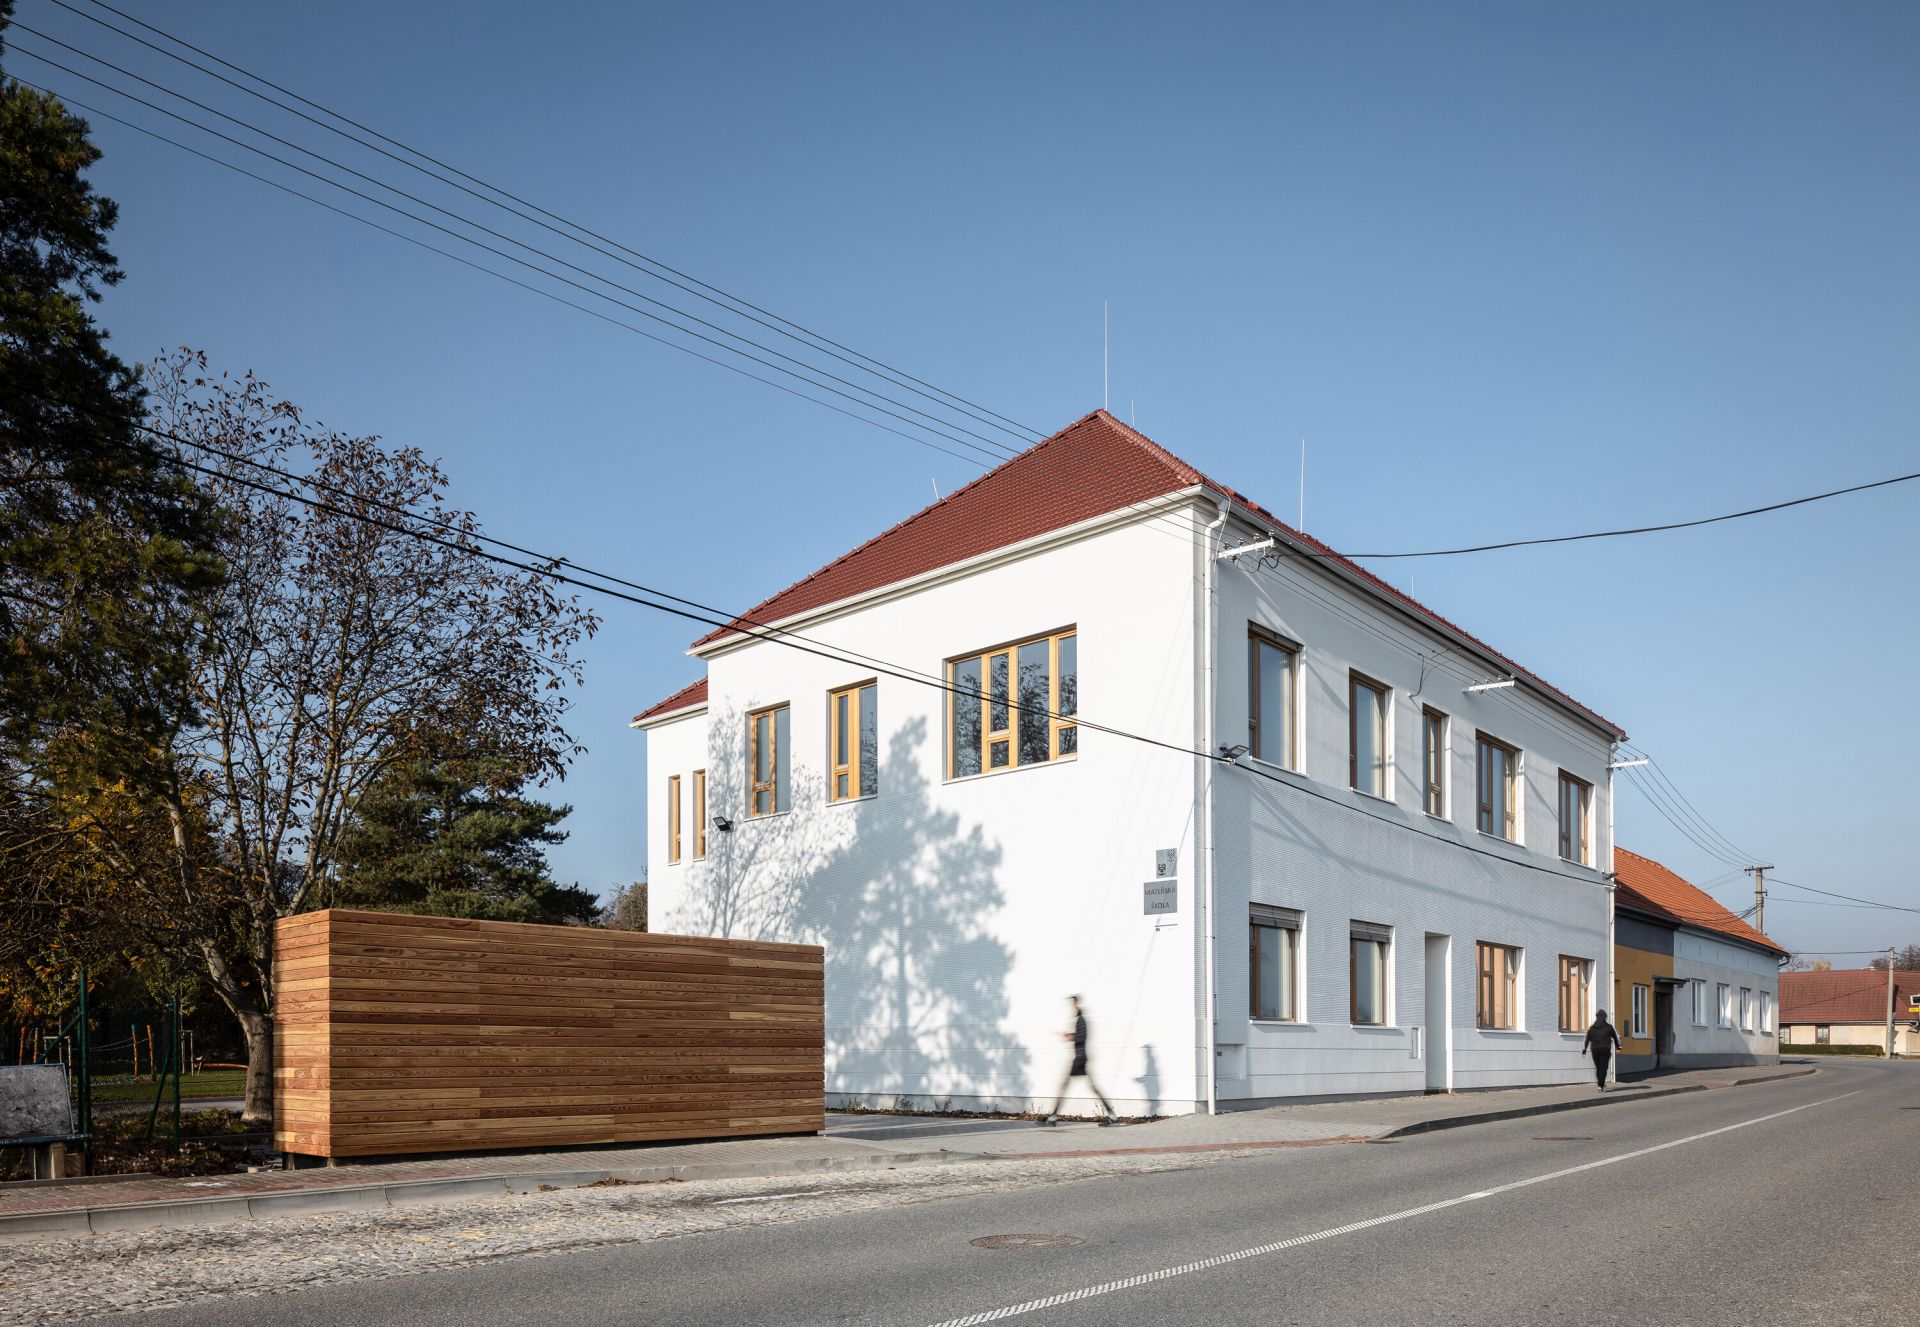 Materská škola sa nachádza v Polánke, v ktorej žije do 500 obyvateľov. 